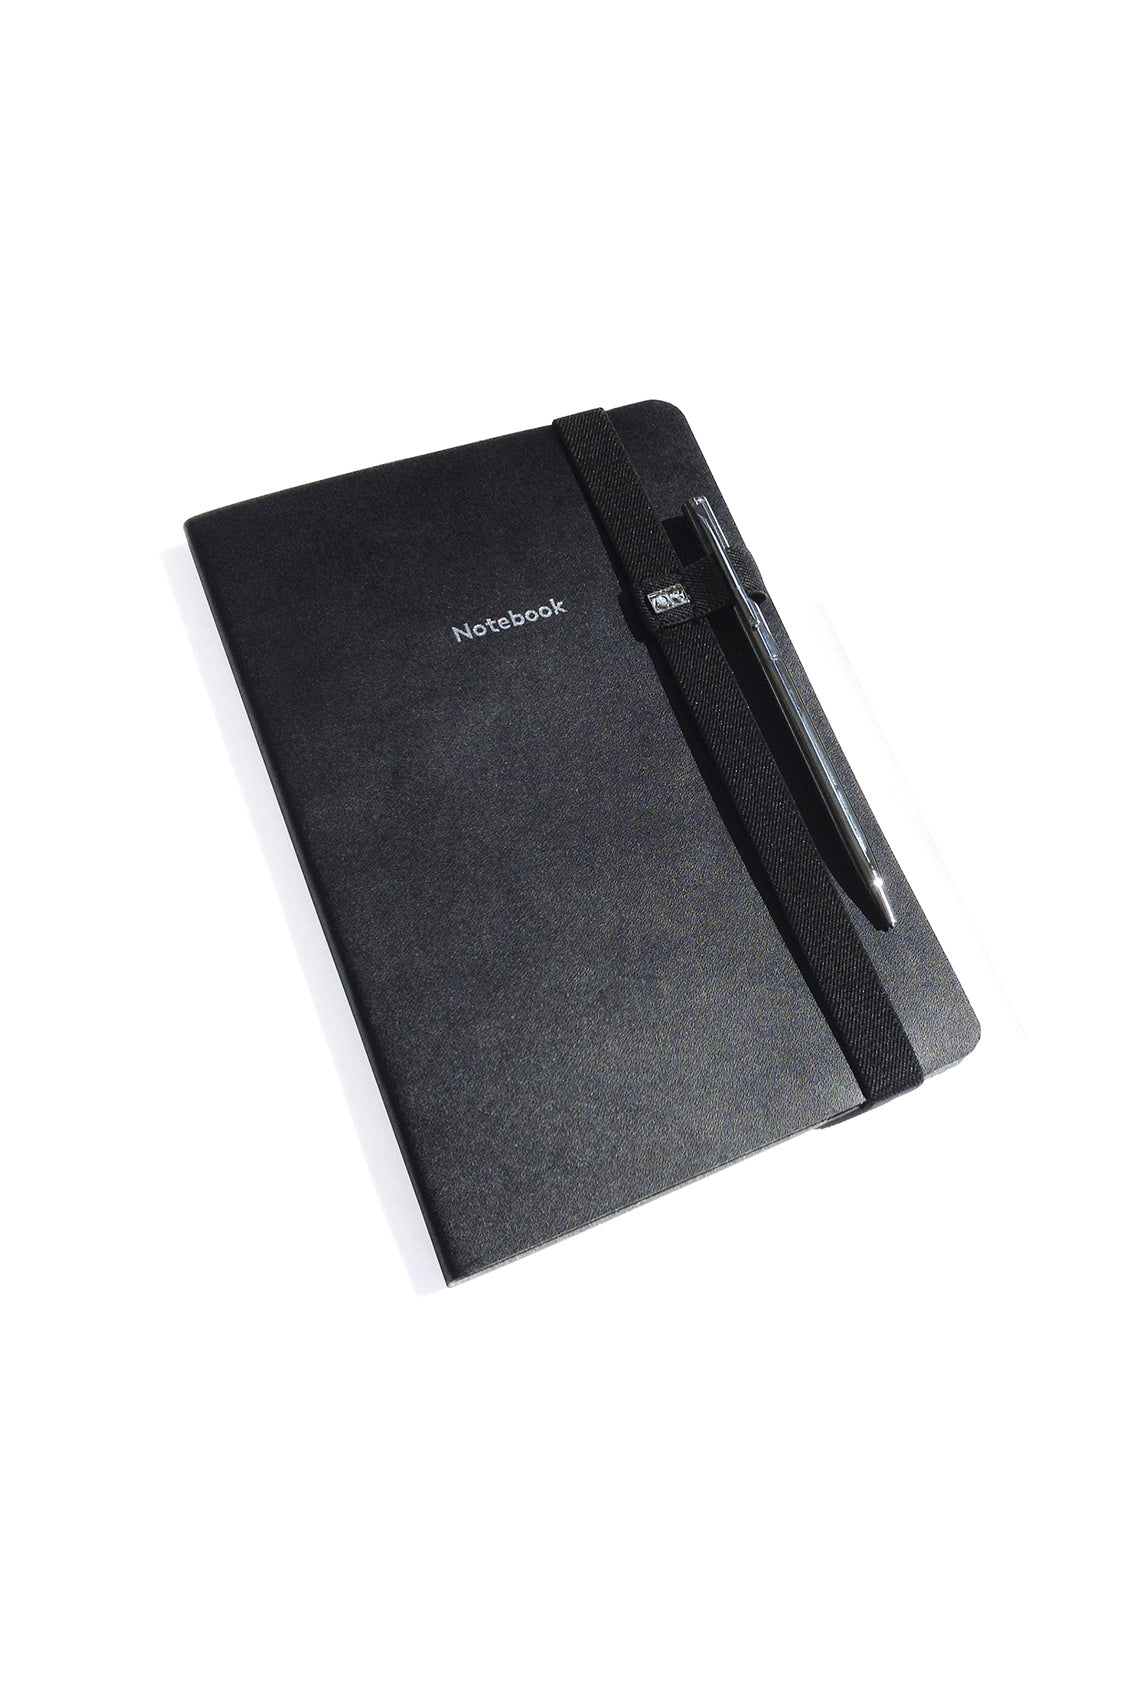 Notebook A5 Pautado com Caneta Daily Men